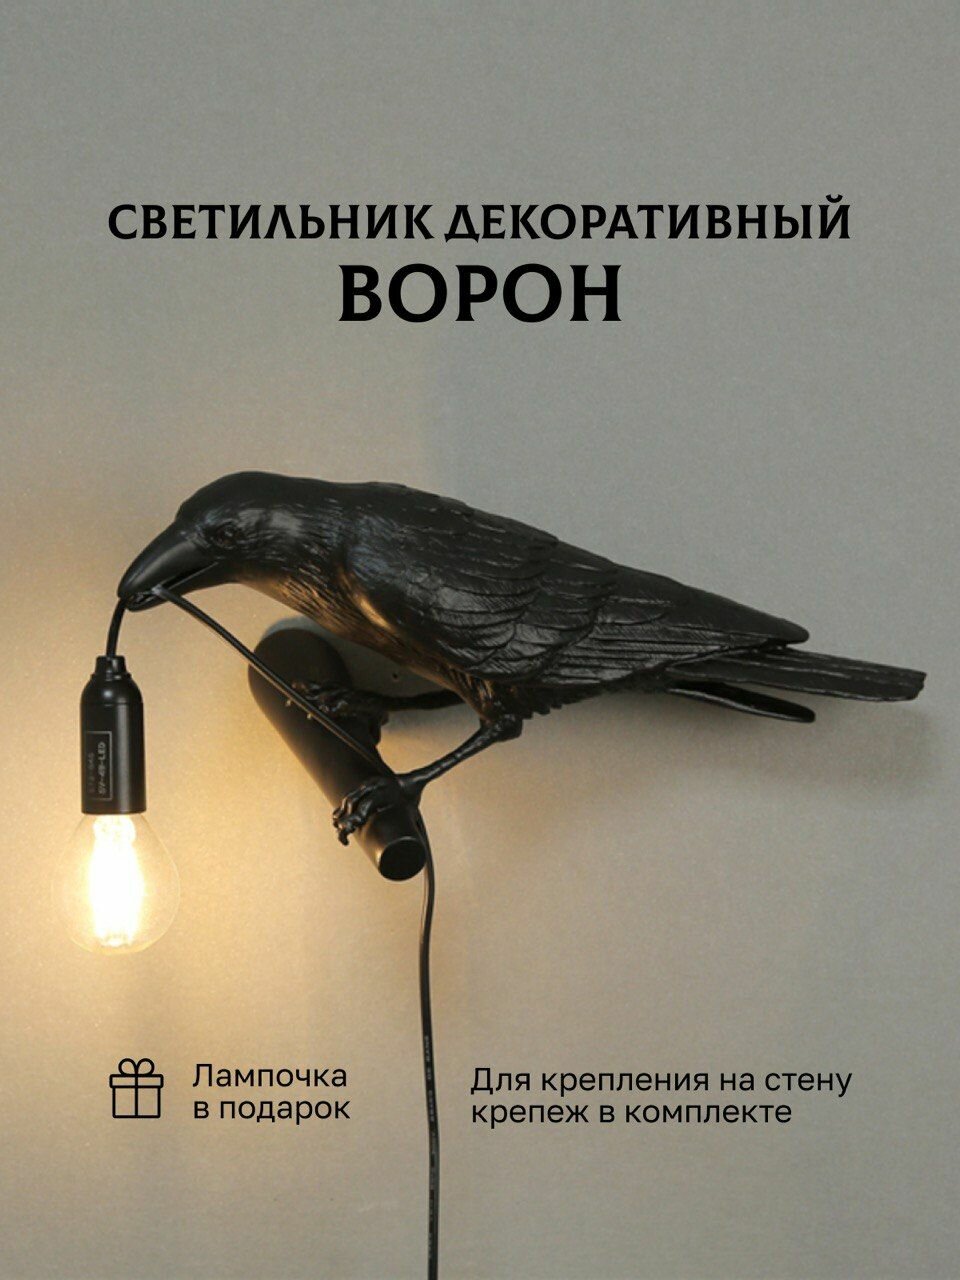 Светильник настенный черный Ворон на ветке смотрит влево - фотография № 1